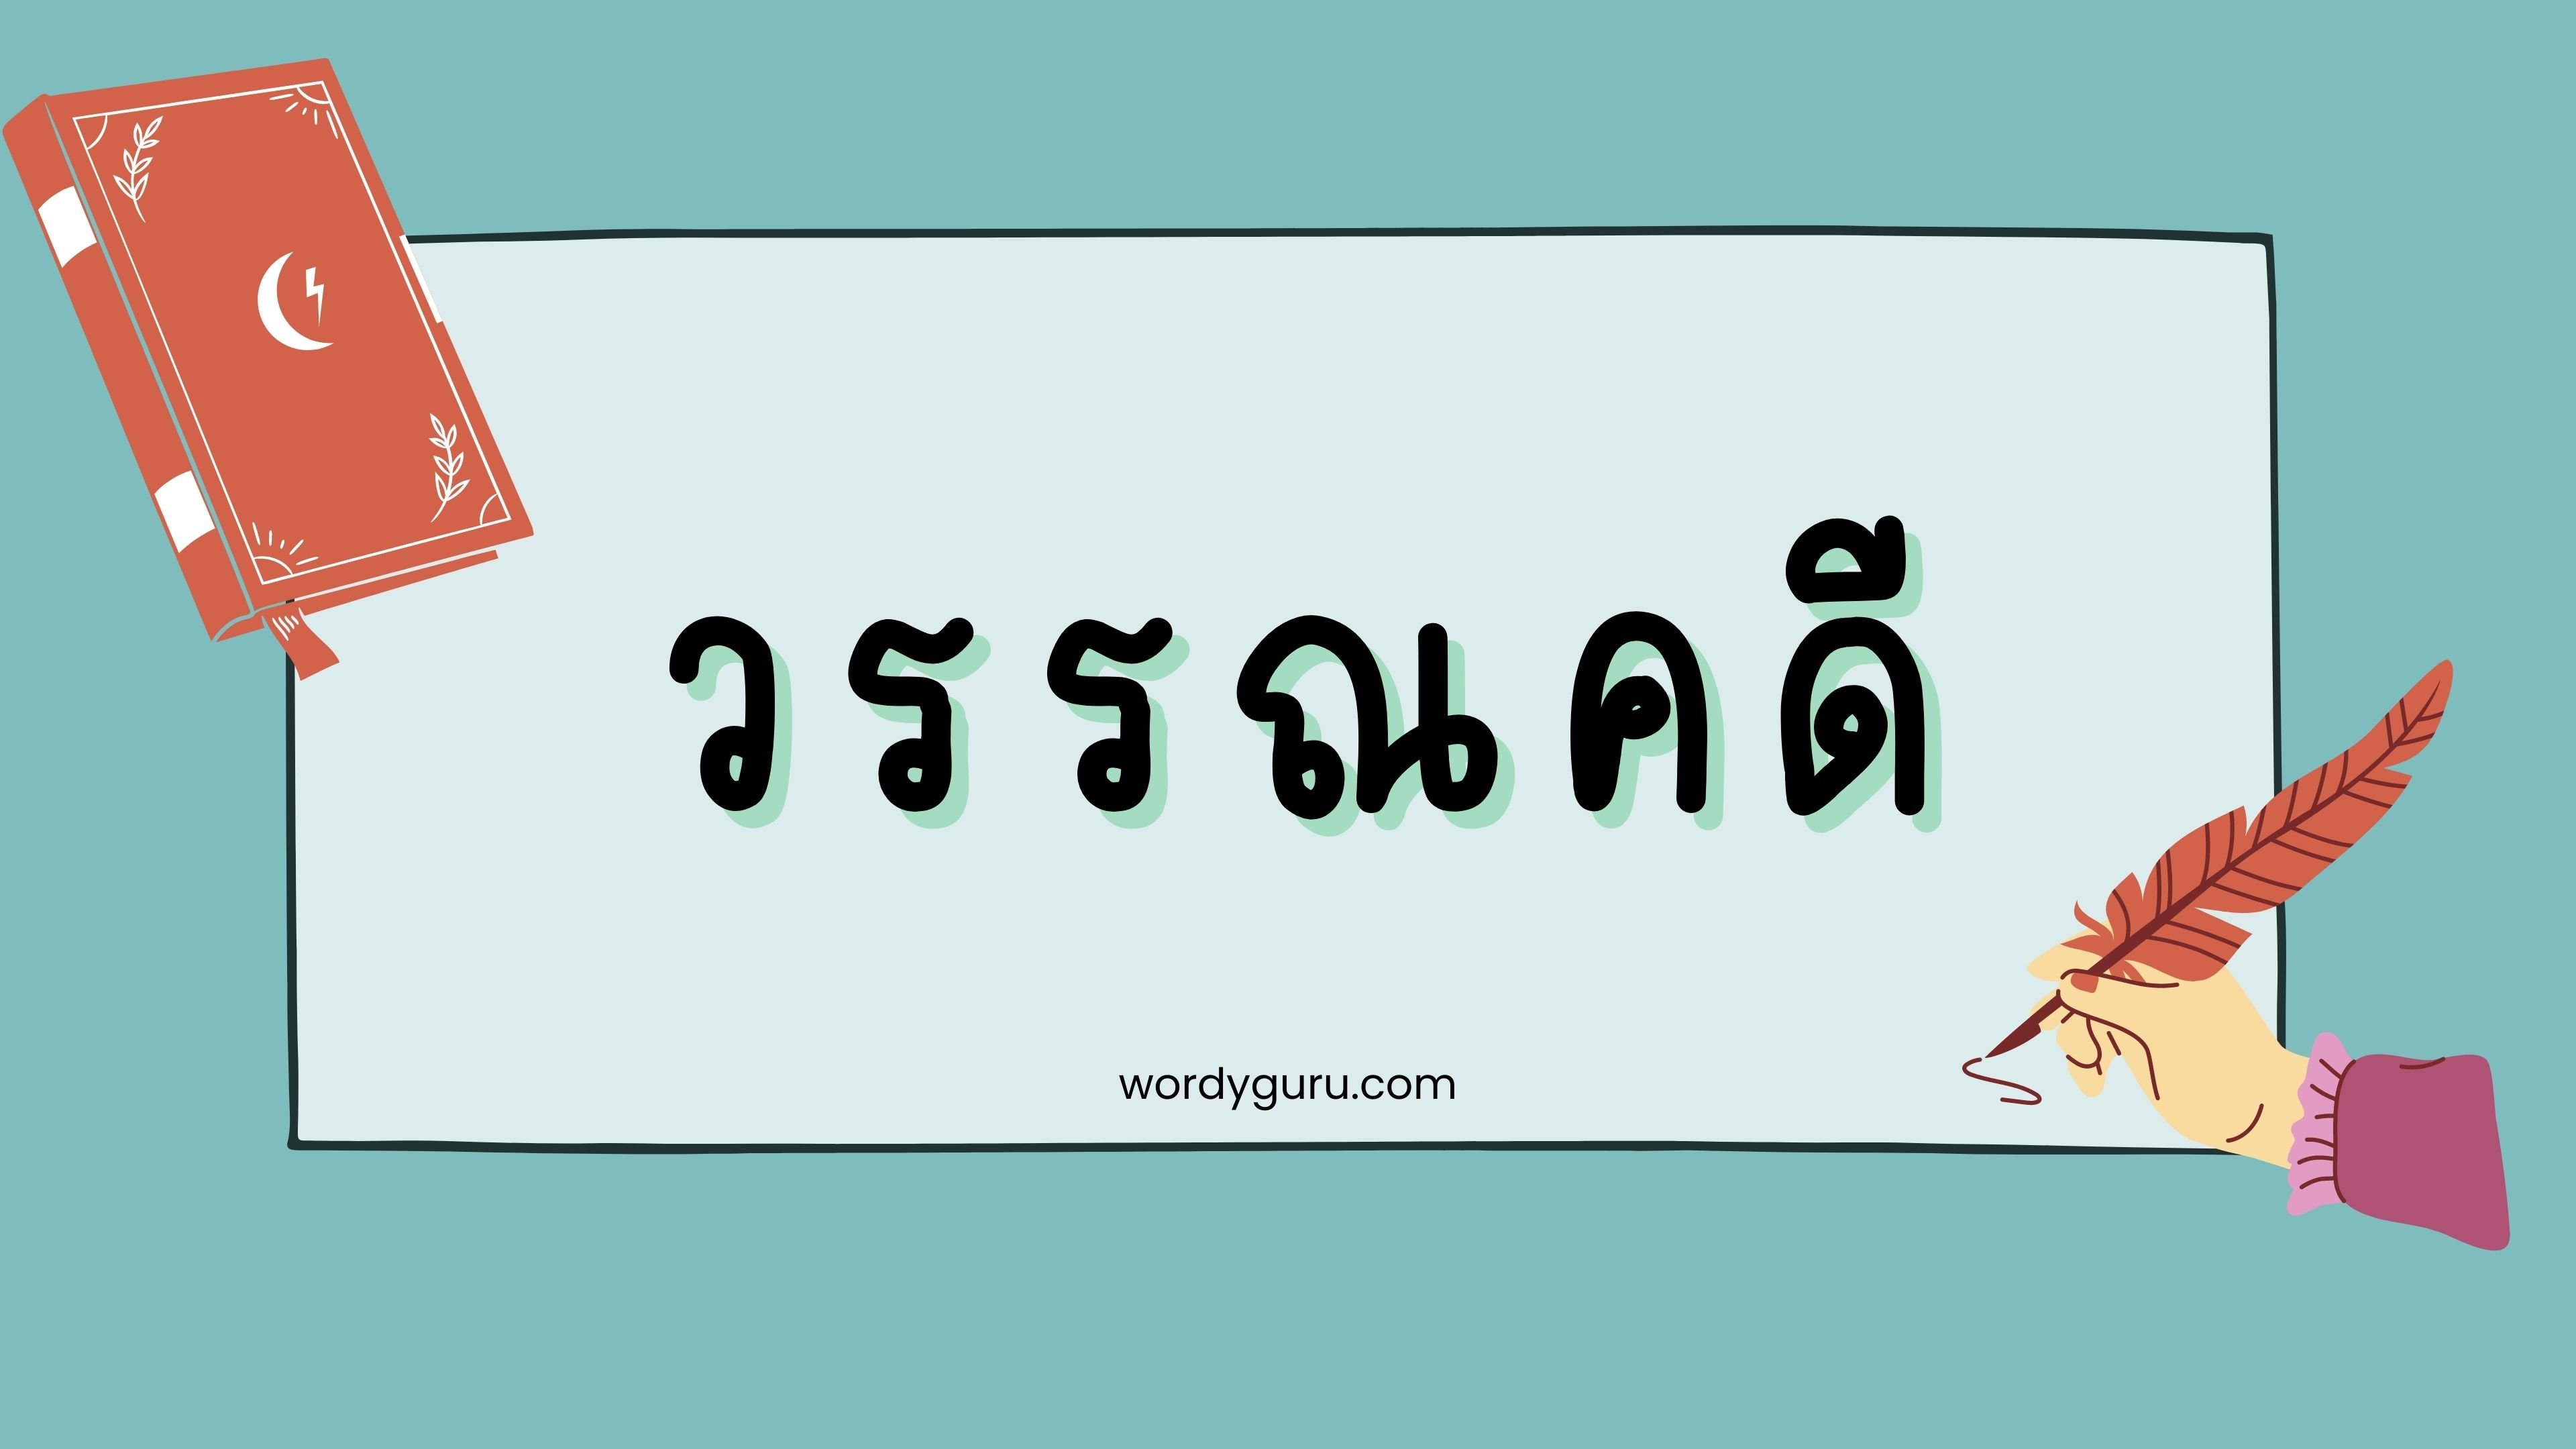 เรียนรู้ภาษาไทยในวันนี้ เรามาทำความรู้จักกับ “วรรณคดี” กันนะครับ ว่ามีความหมายว่าอย่างไร และมีกี่ประเภท